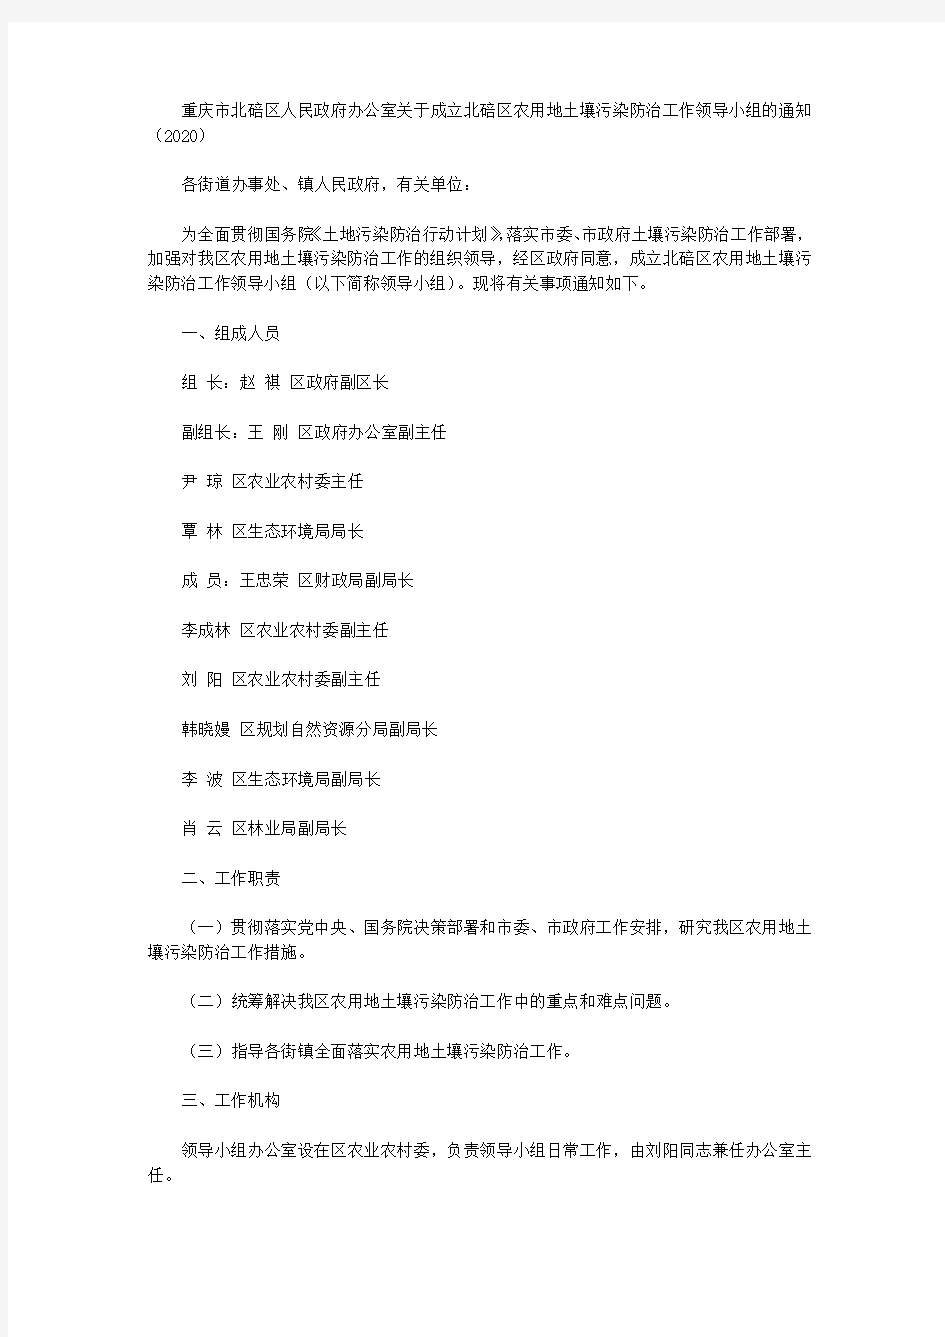 重庆市北碚区人民政府办公室关于成立北碚区农用地土壤污染防治工作领导小组的通知(2020)